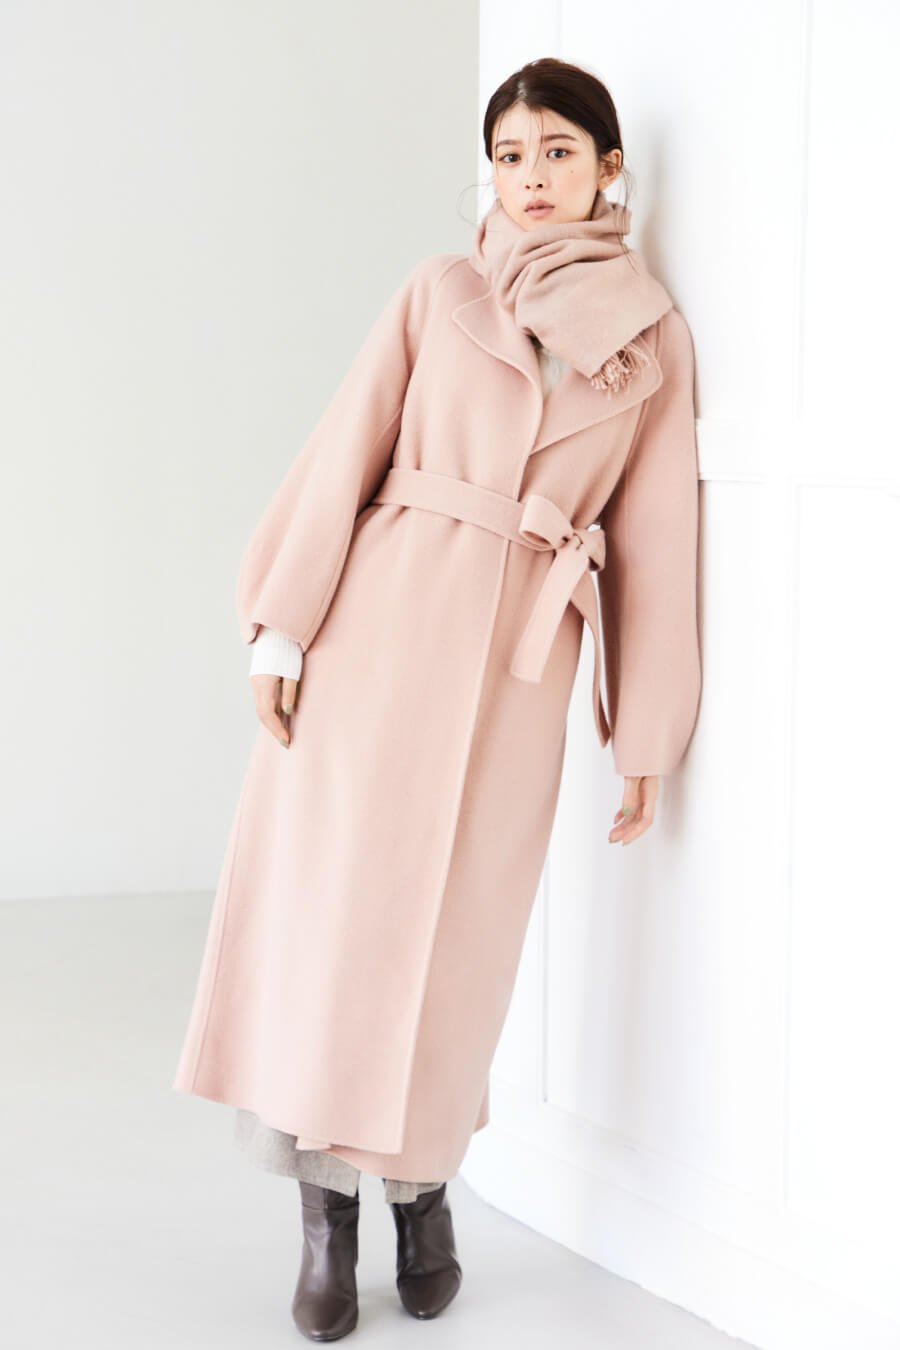 ライトピンクのコート・アイボリーのニット・ベージュのパンツを履いた女性